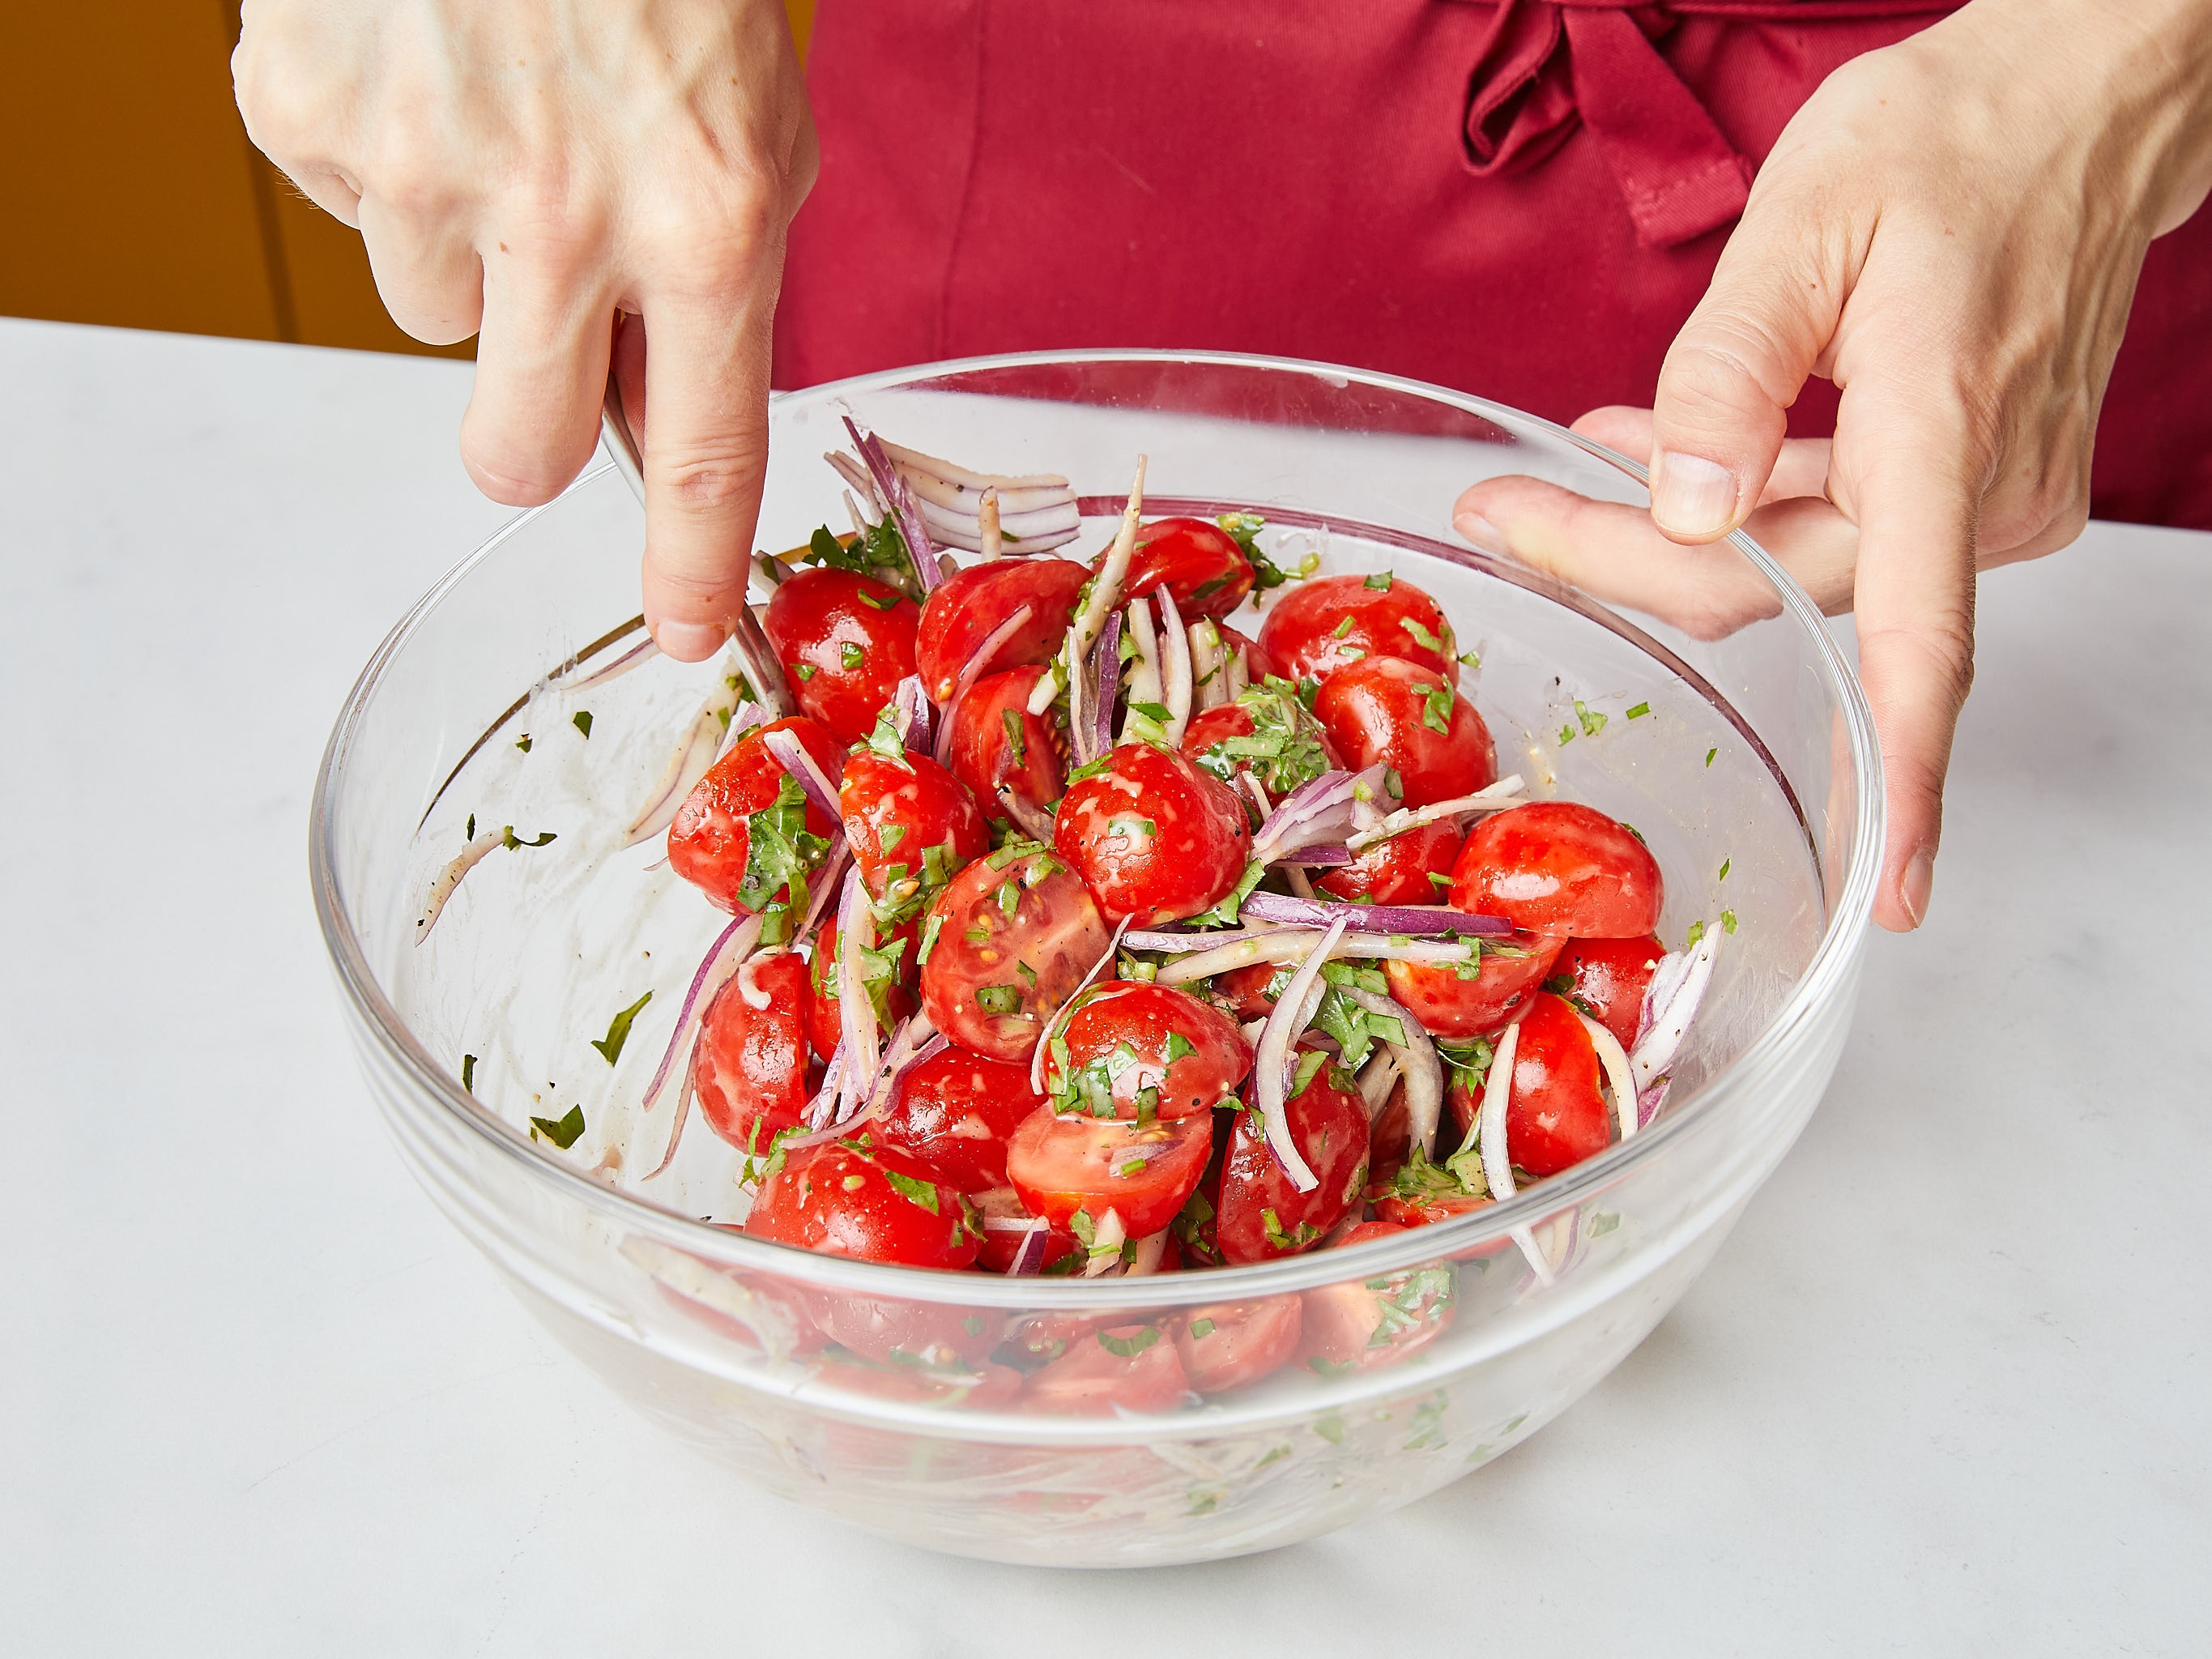 Làm salad thịt nướng cà chua cho cuộc vui cuối tuần - ảnh 5